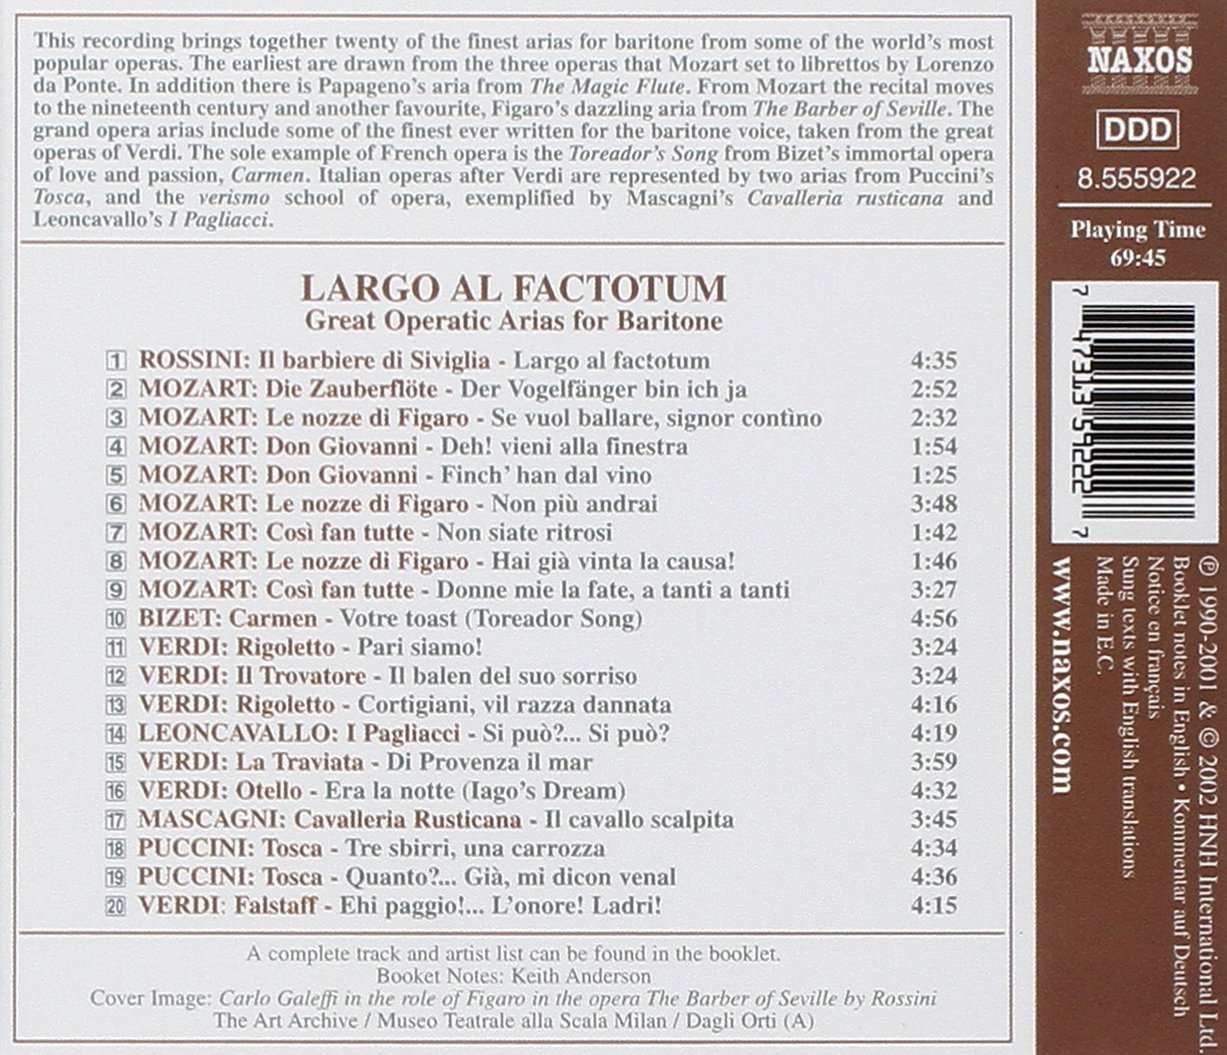 LARGO AL FACTORUM - FAMOUS BARITONE ARIA - slide-1